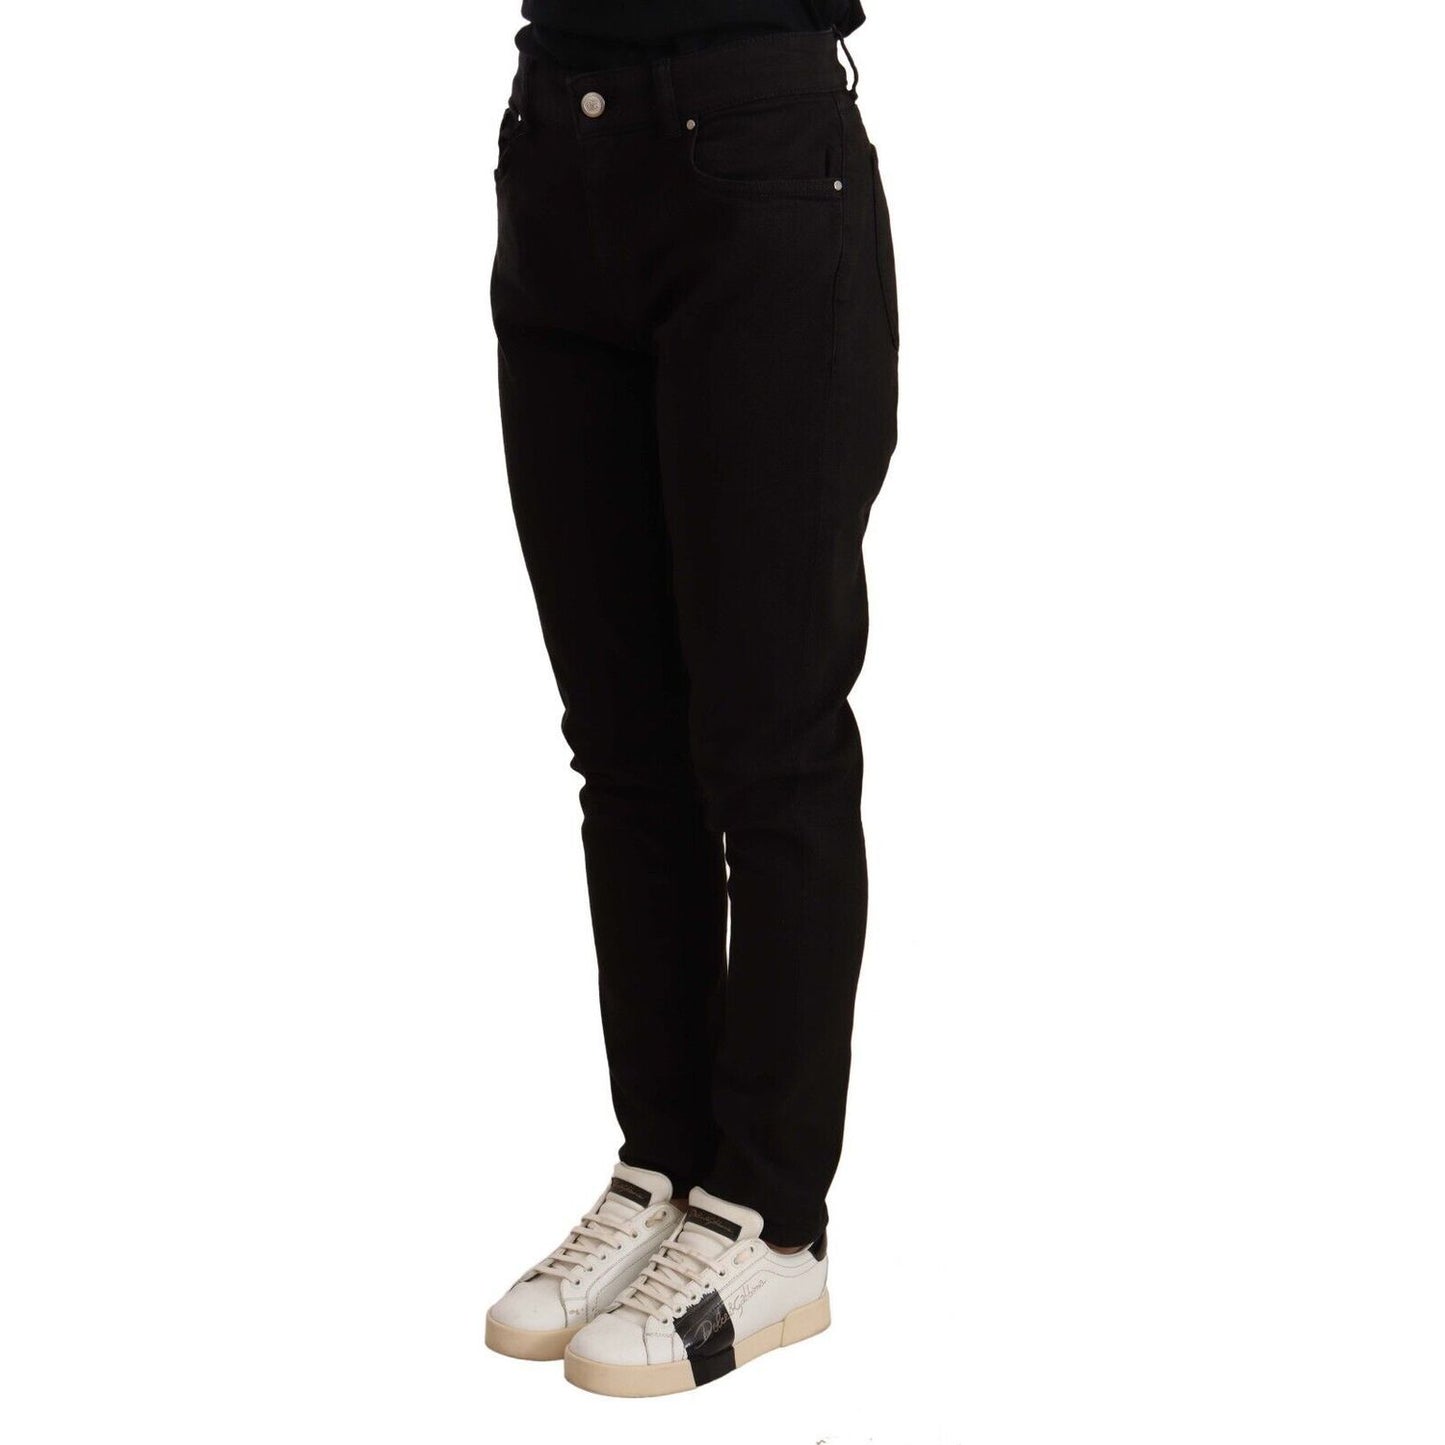 Dolce & Gabbana Elegant Slim-Fit Black Skinny Jeans black-skinny-slim-denim-cotton-stretch-jeans-2